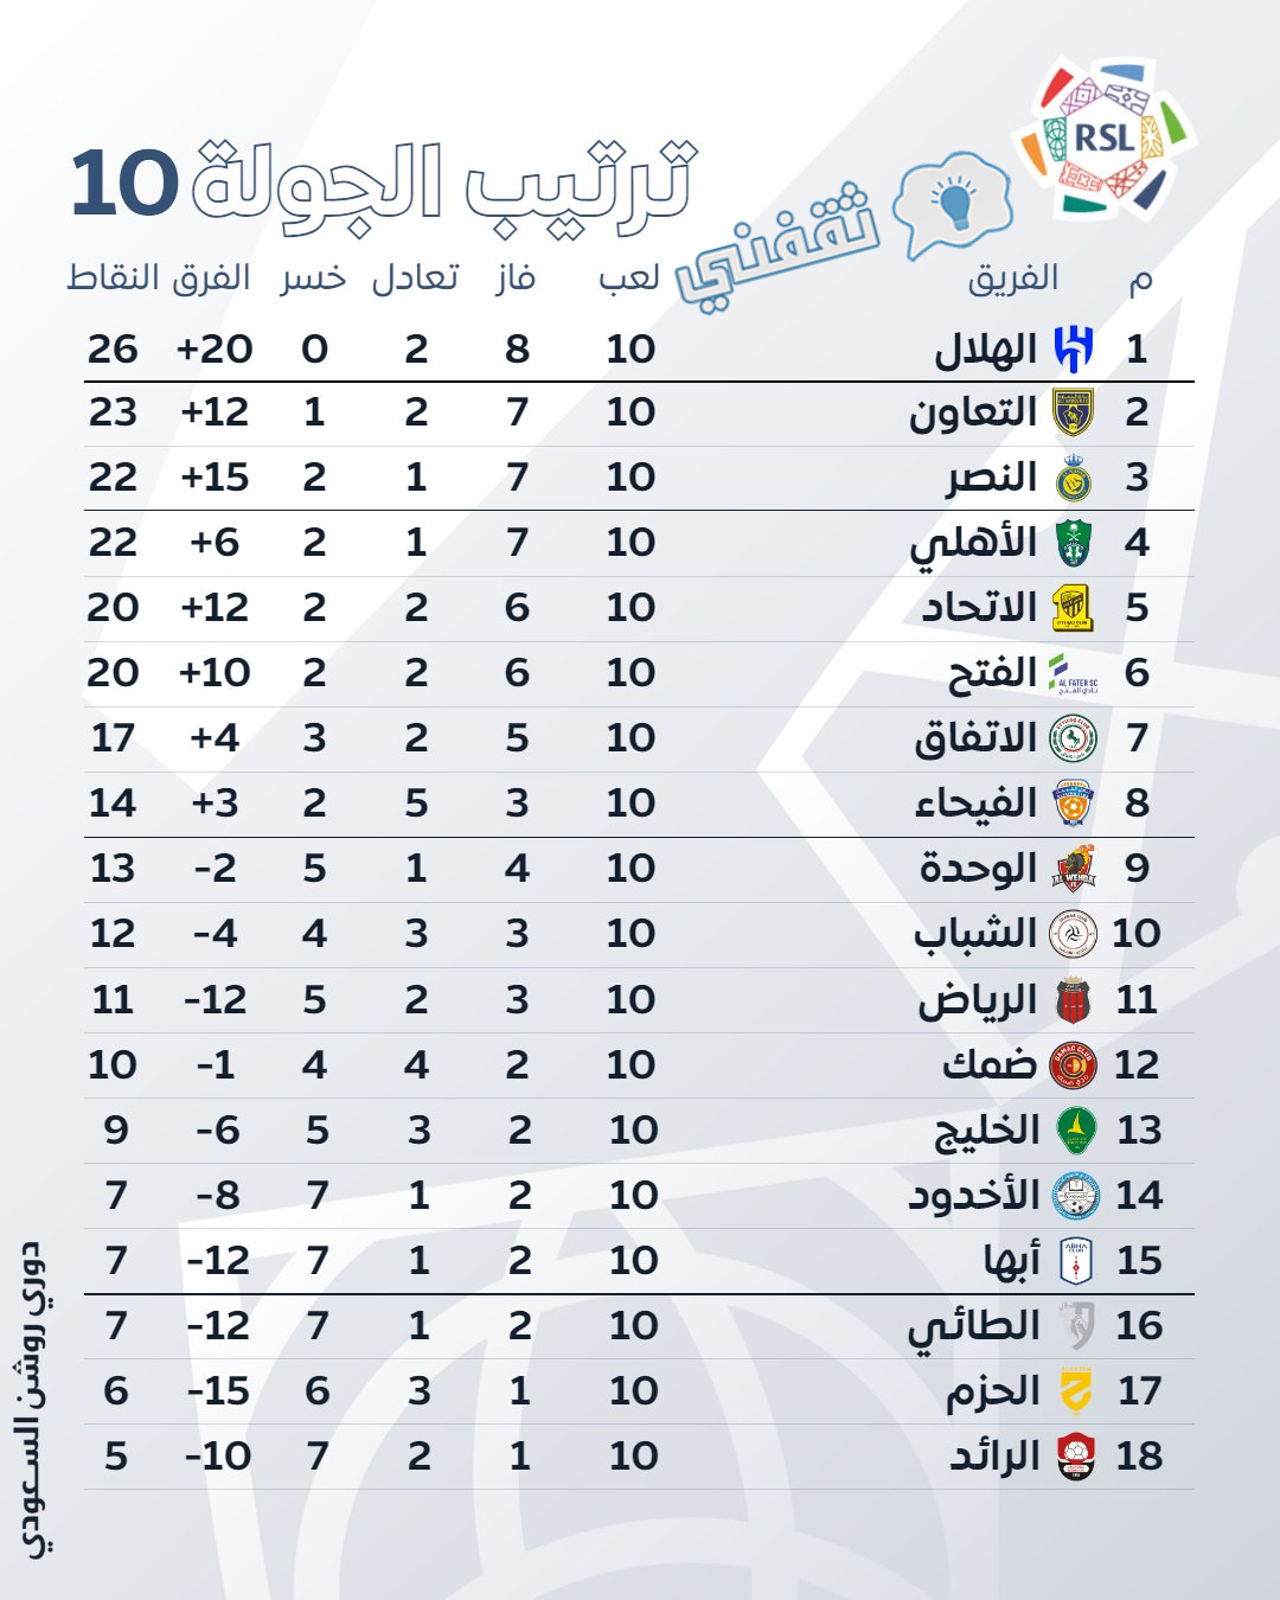 جدول ترتيب الدوري السعودي للمحترفين (دوري روشن) موسم 2023_2024 بعد انتهاء الجولة 10